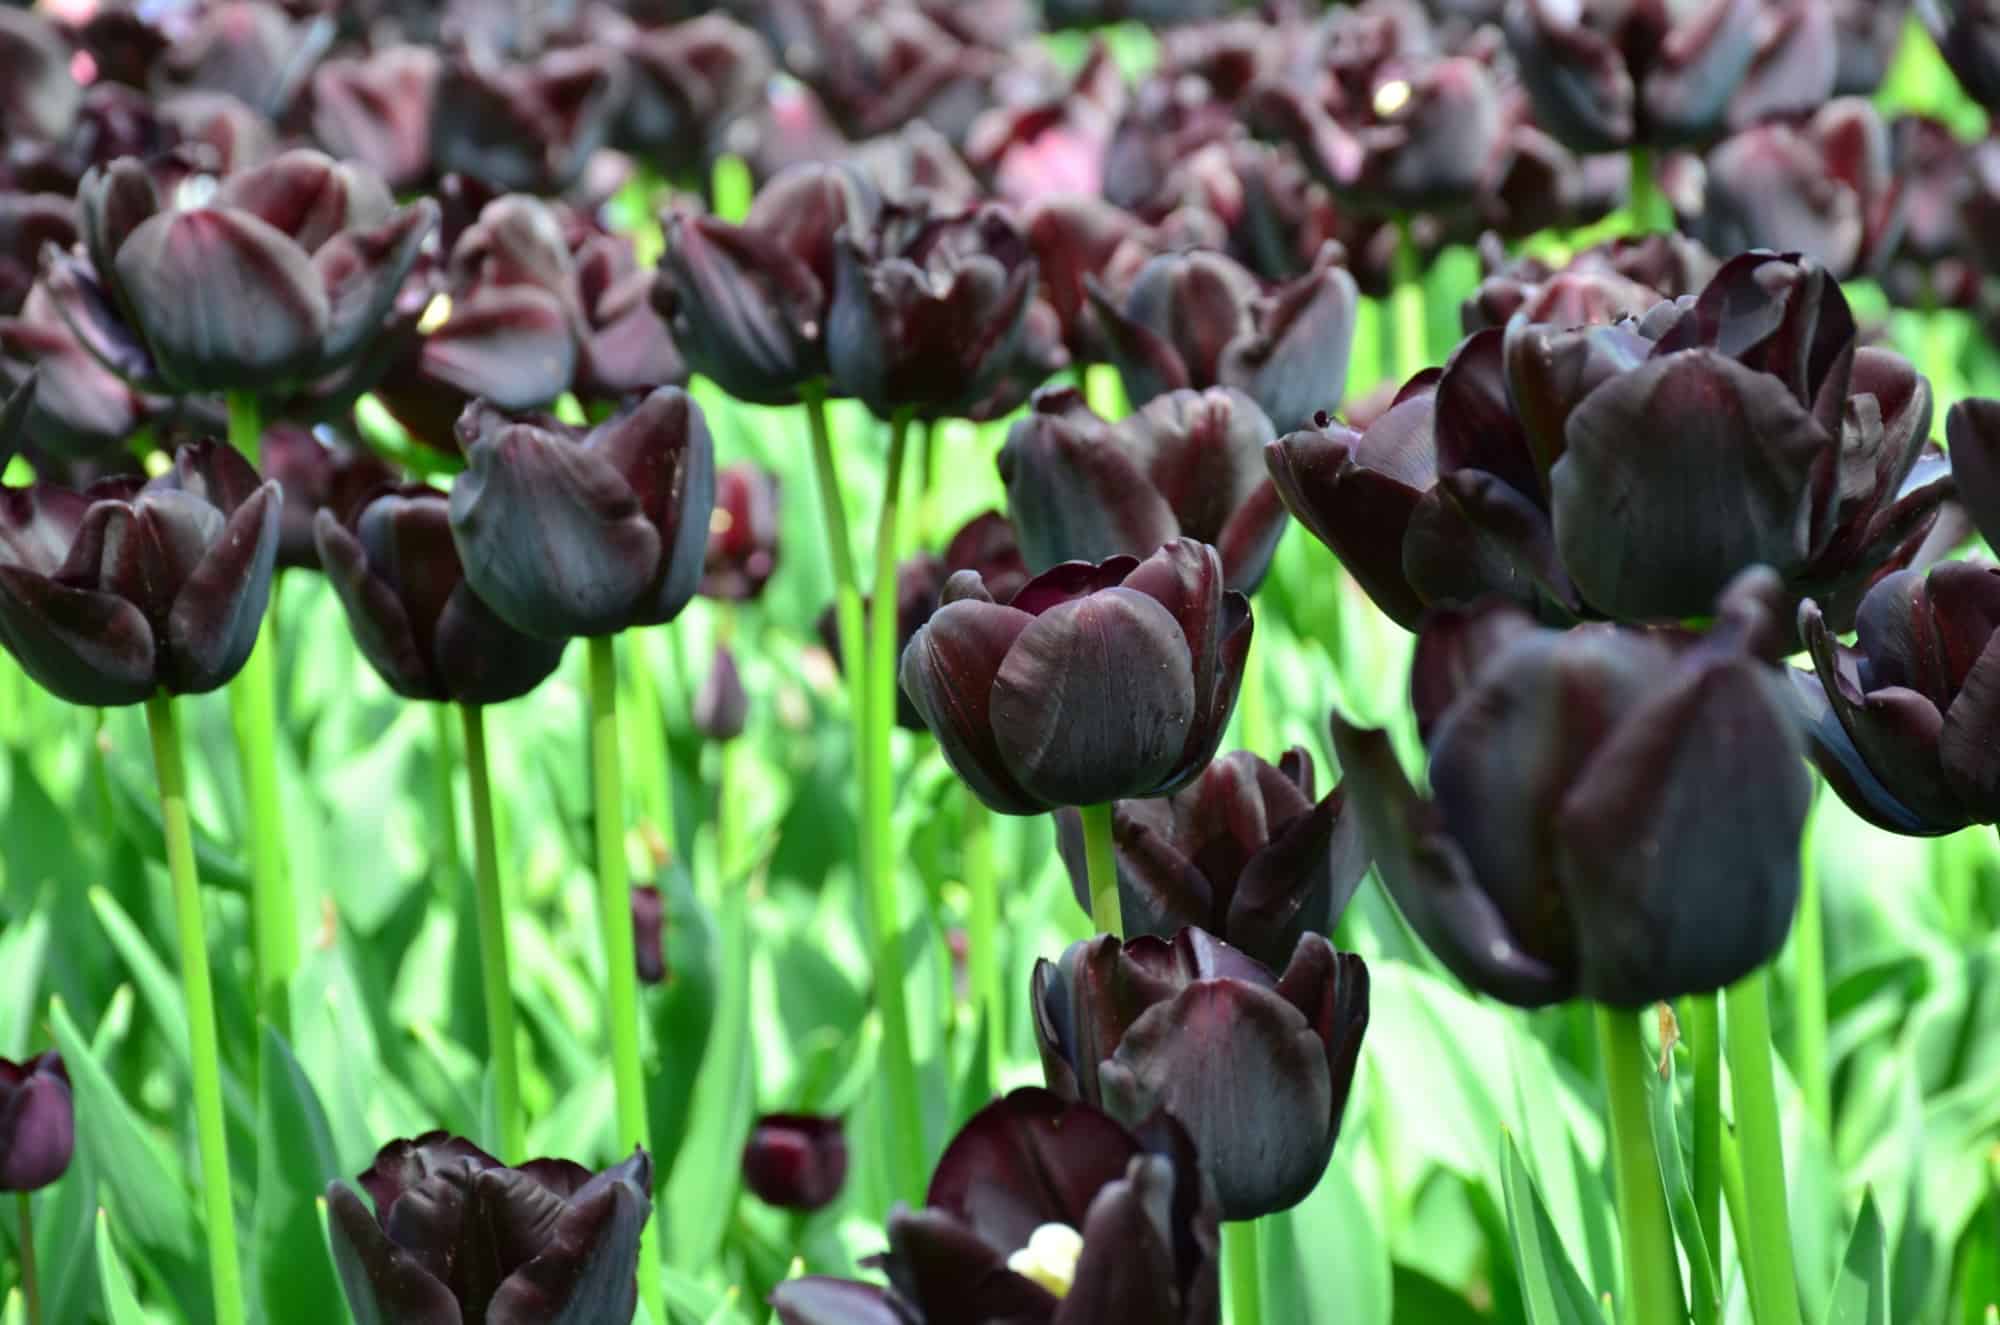 tulipas negras